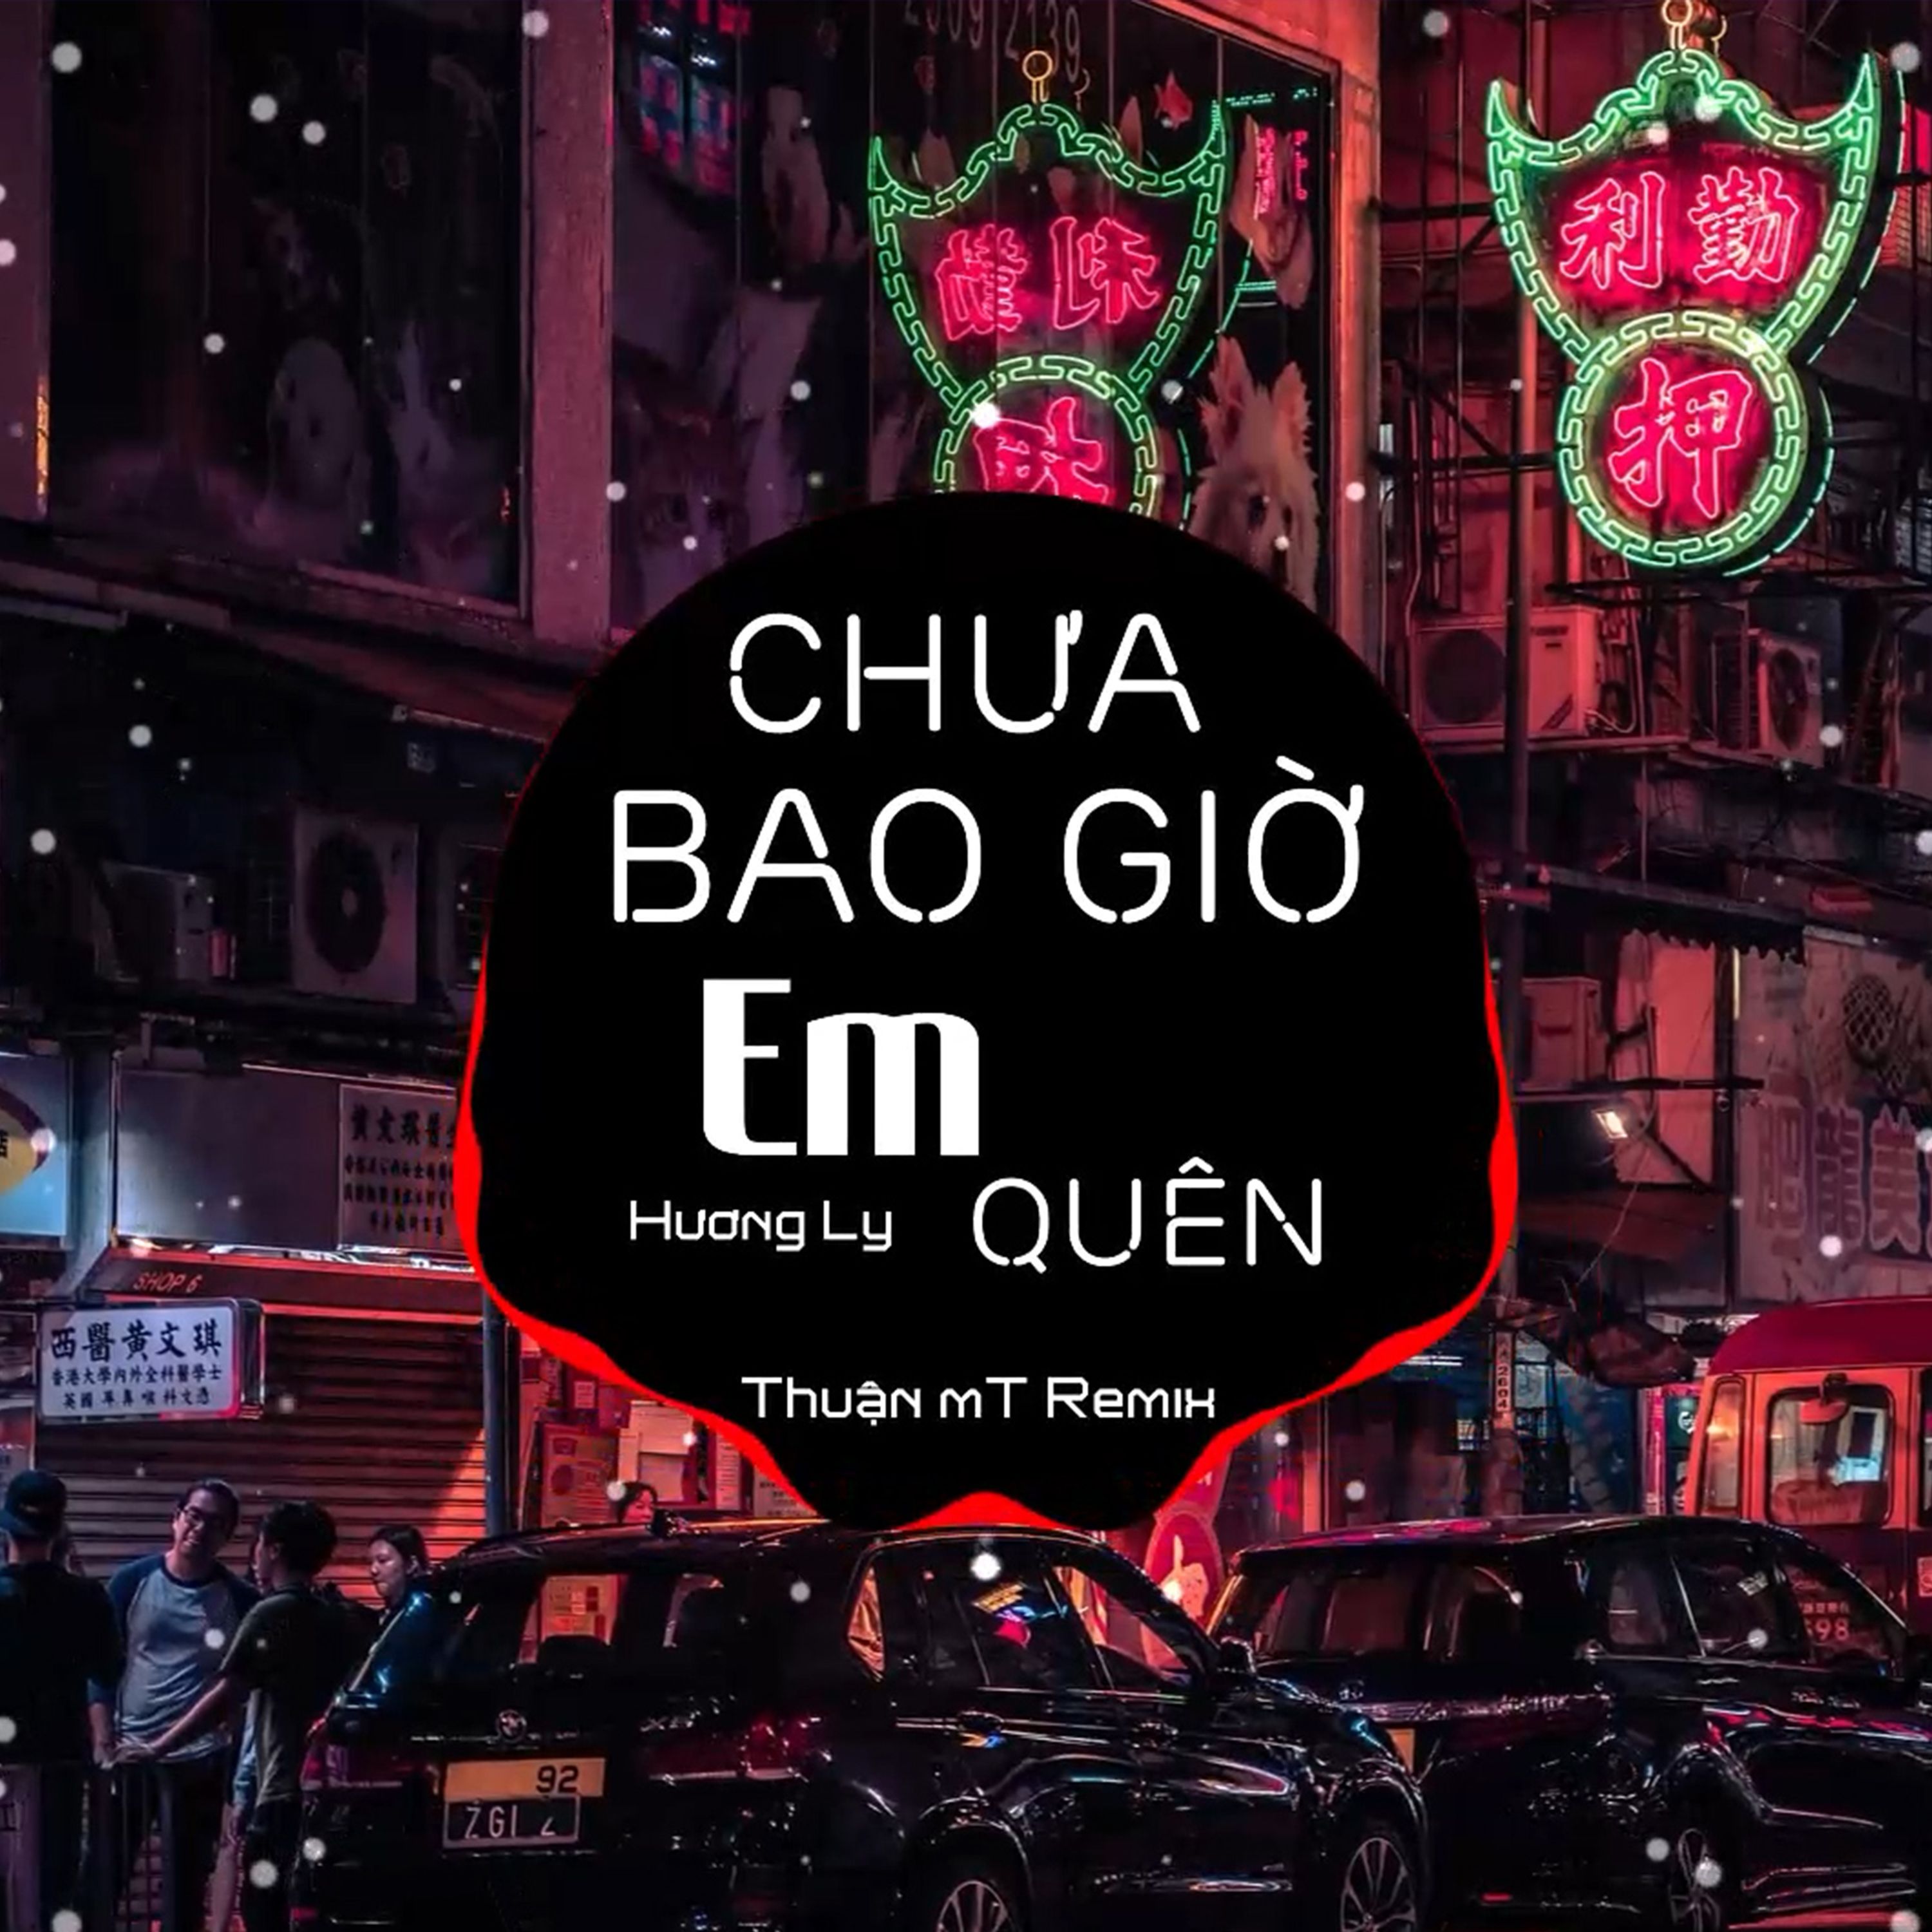 ਡਾਉਨਲੋਡ ਕਰੋ Chưa Bao Giờ Em Quên ( Thuận mT Remix ) Ver 2 - Hương Ly | Nhạc Nền Chill Phiêu Nhất TikTok  2021